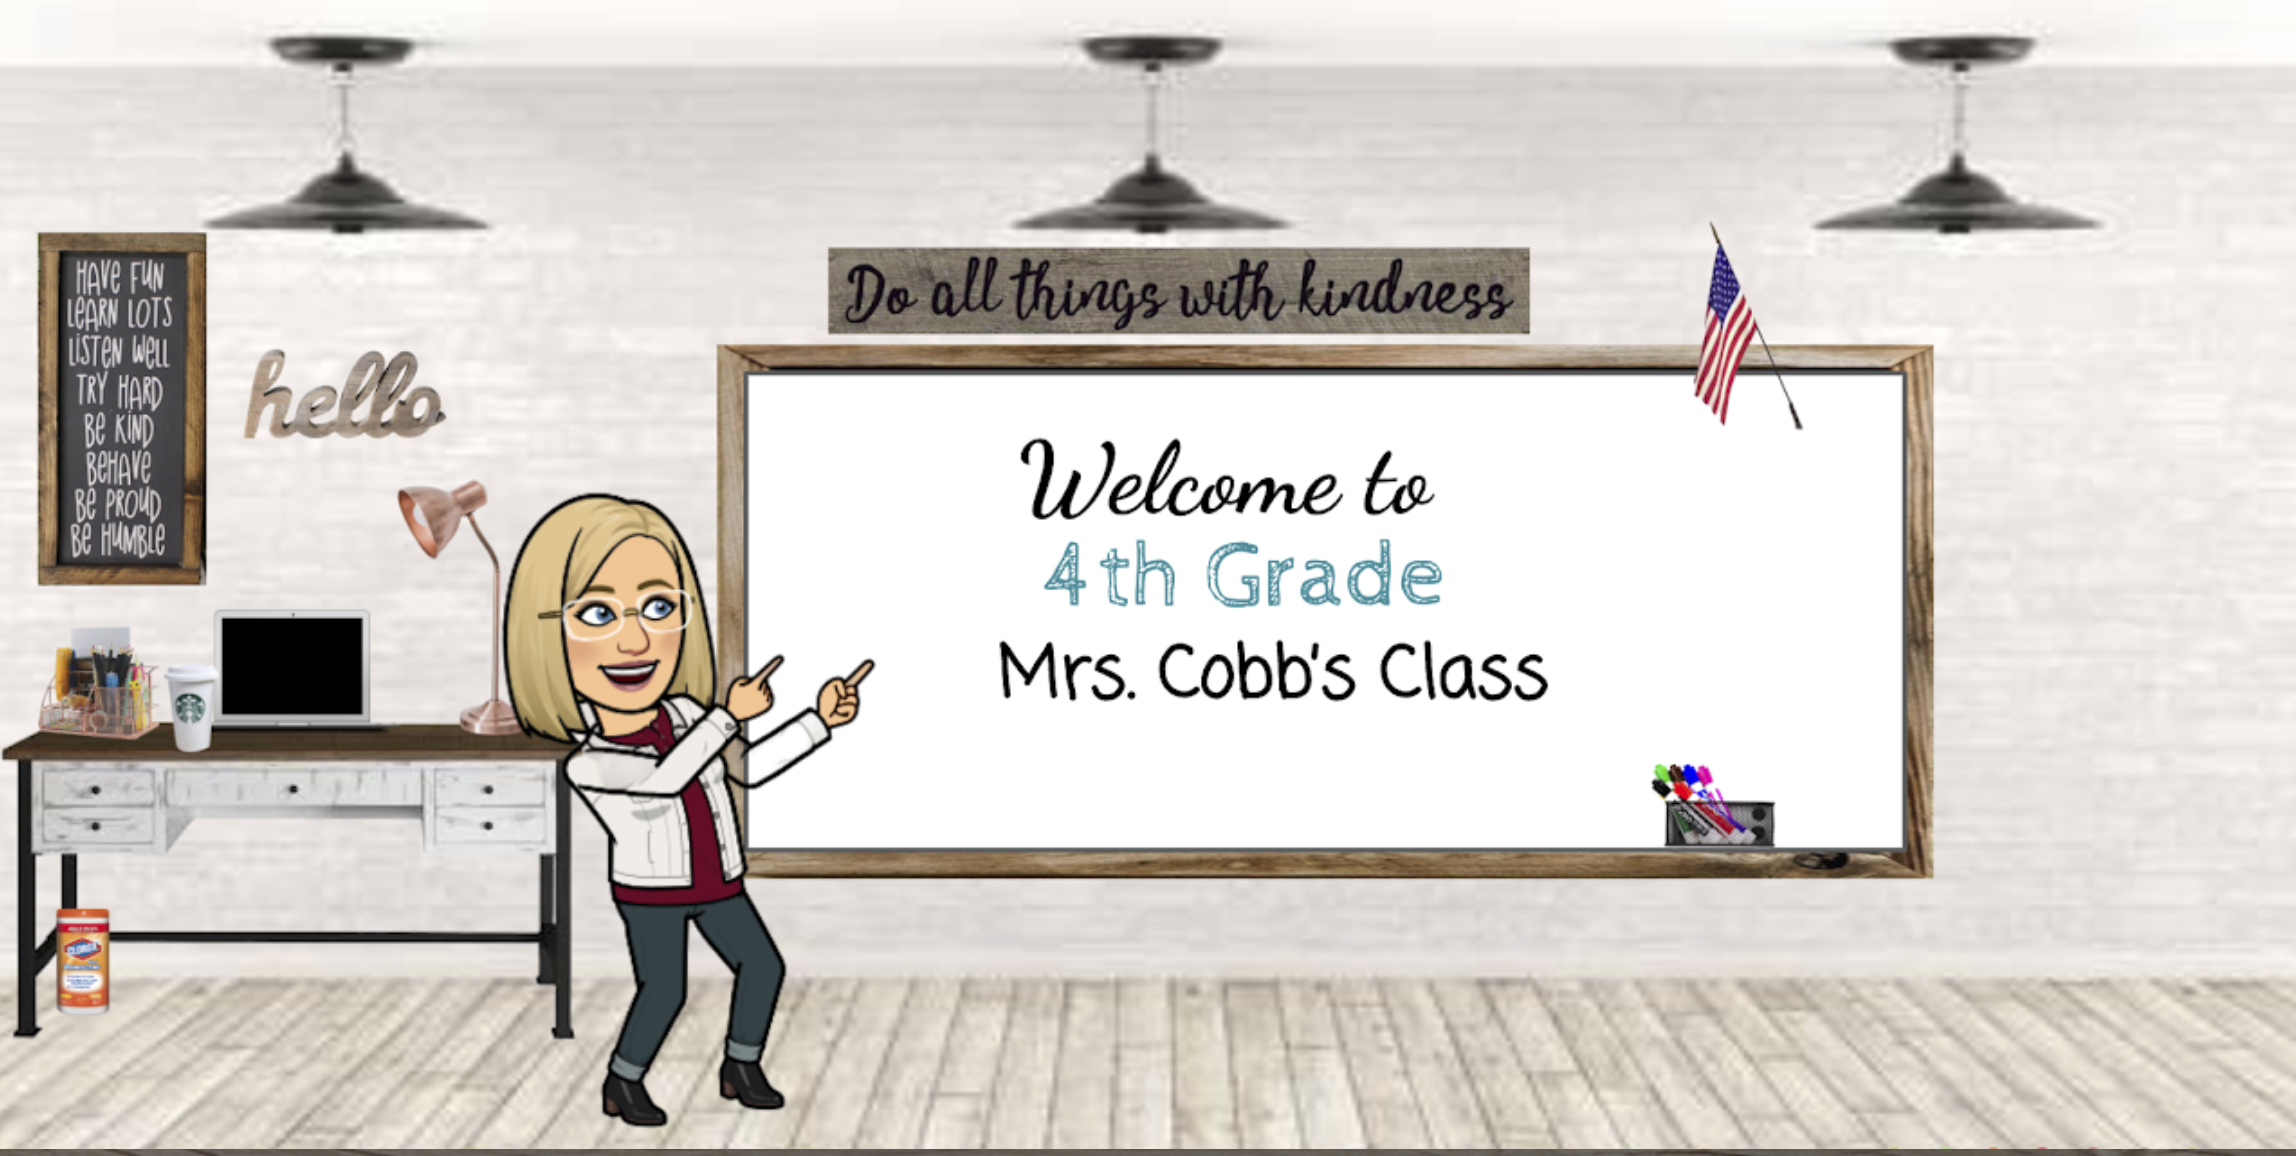 Mrs. Cobb's class